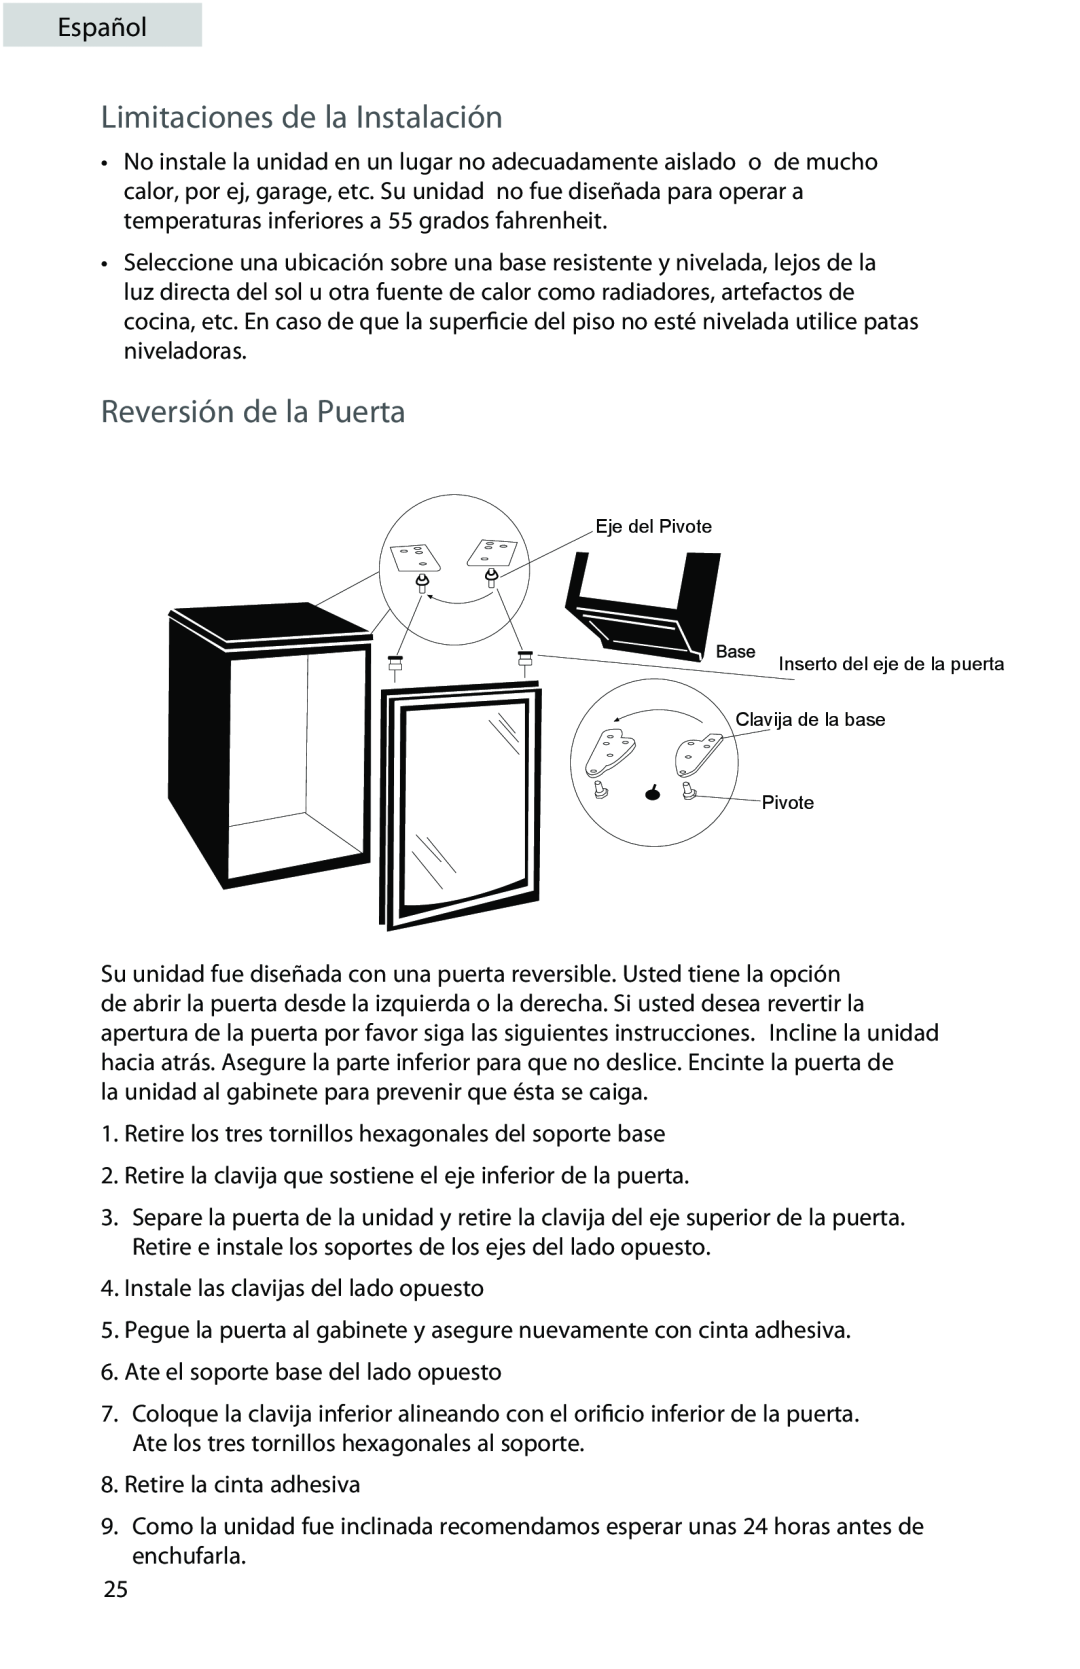 Professional Series PS72001 user manual Limitaciones de la Instalación, Reversión de la Puerta, Español 